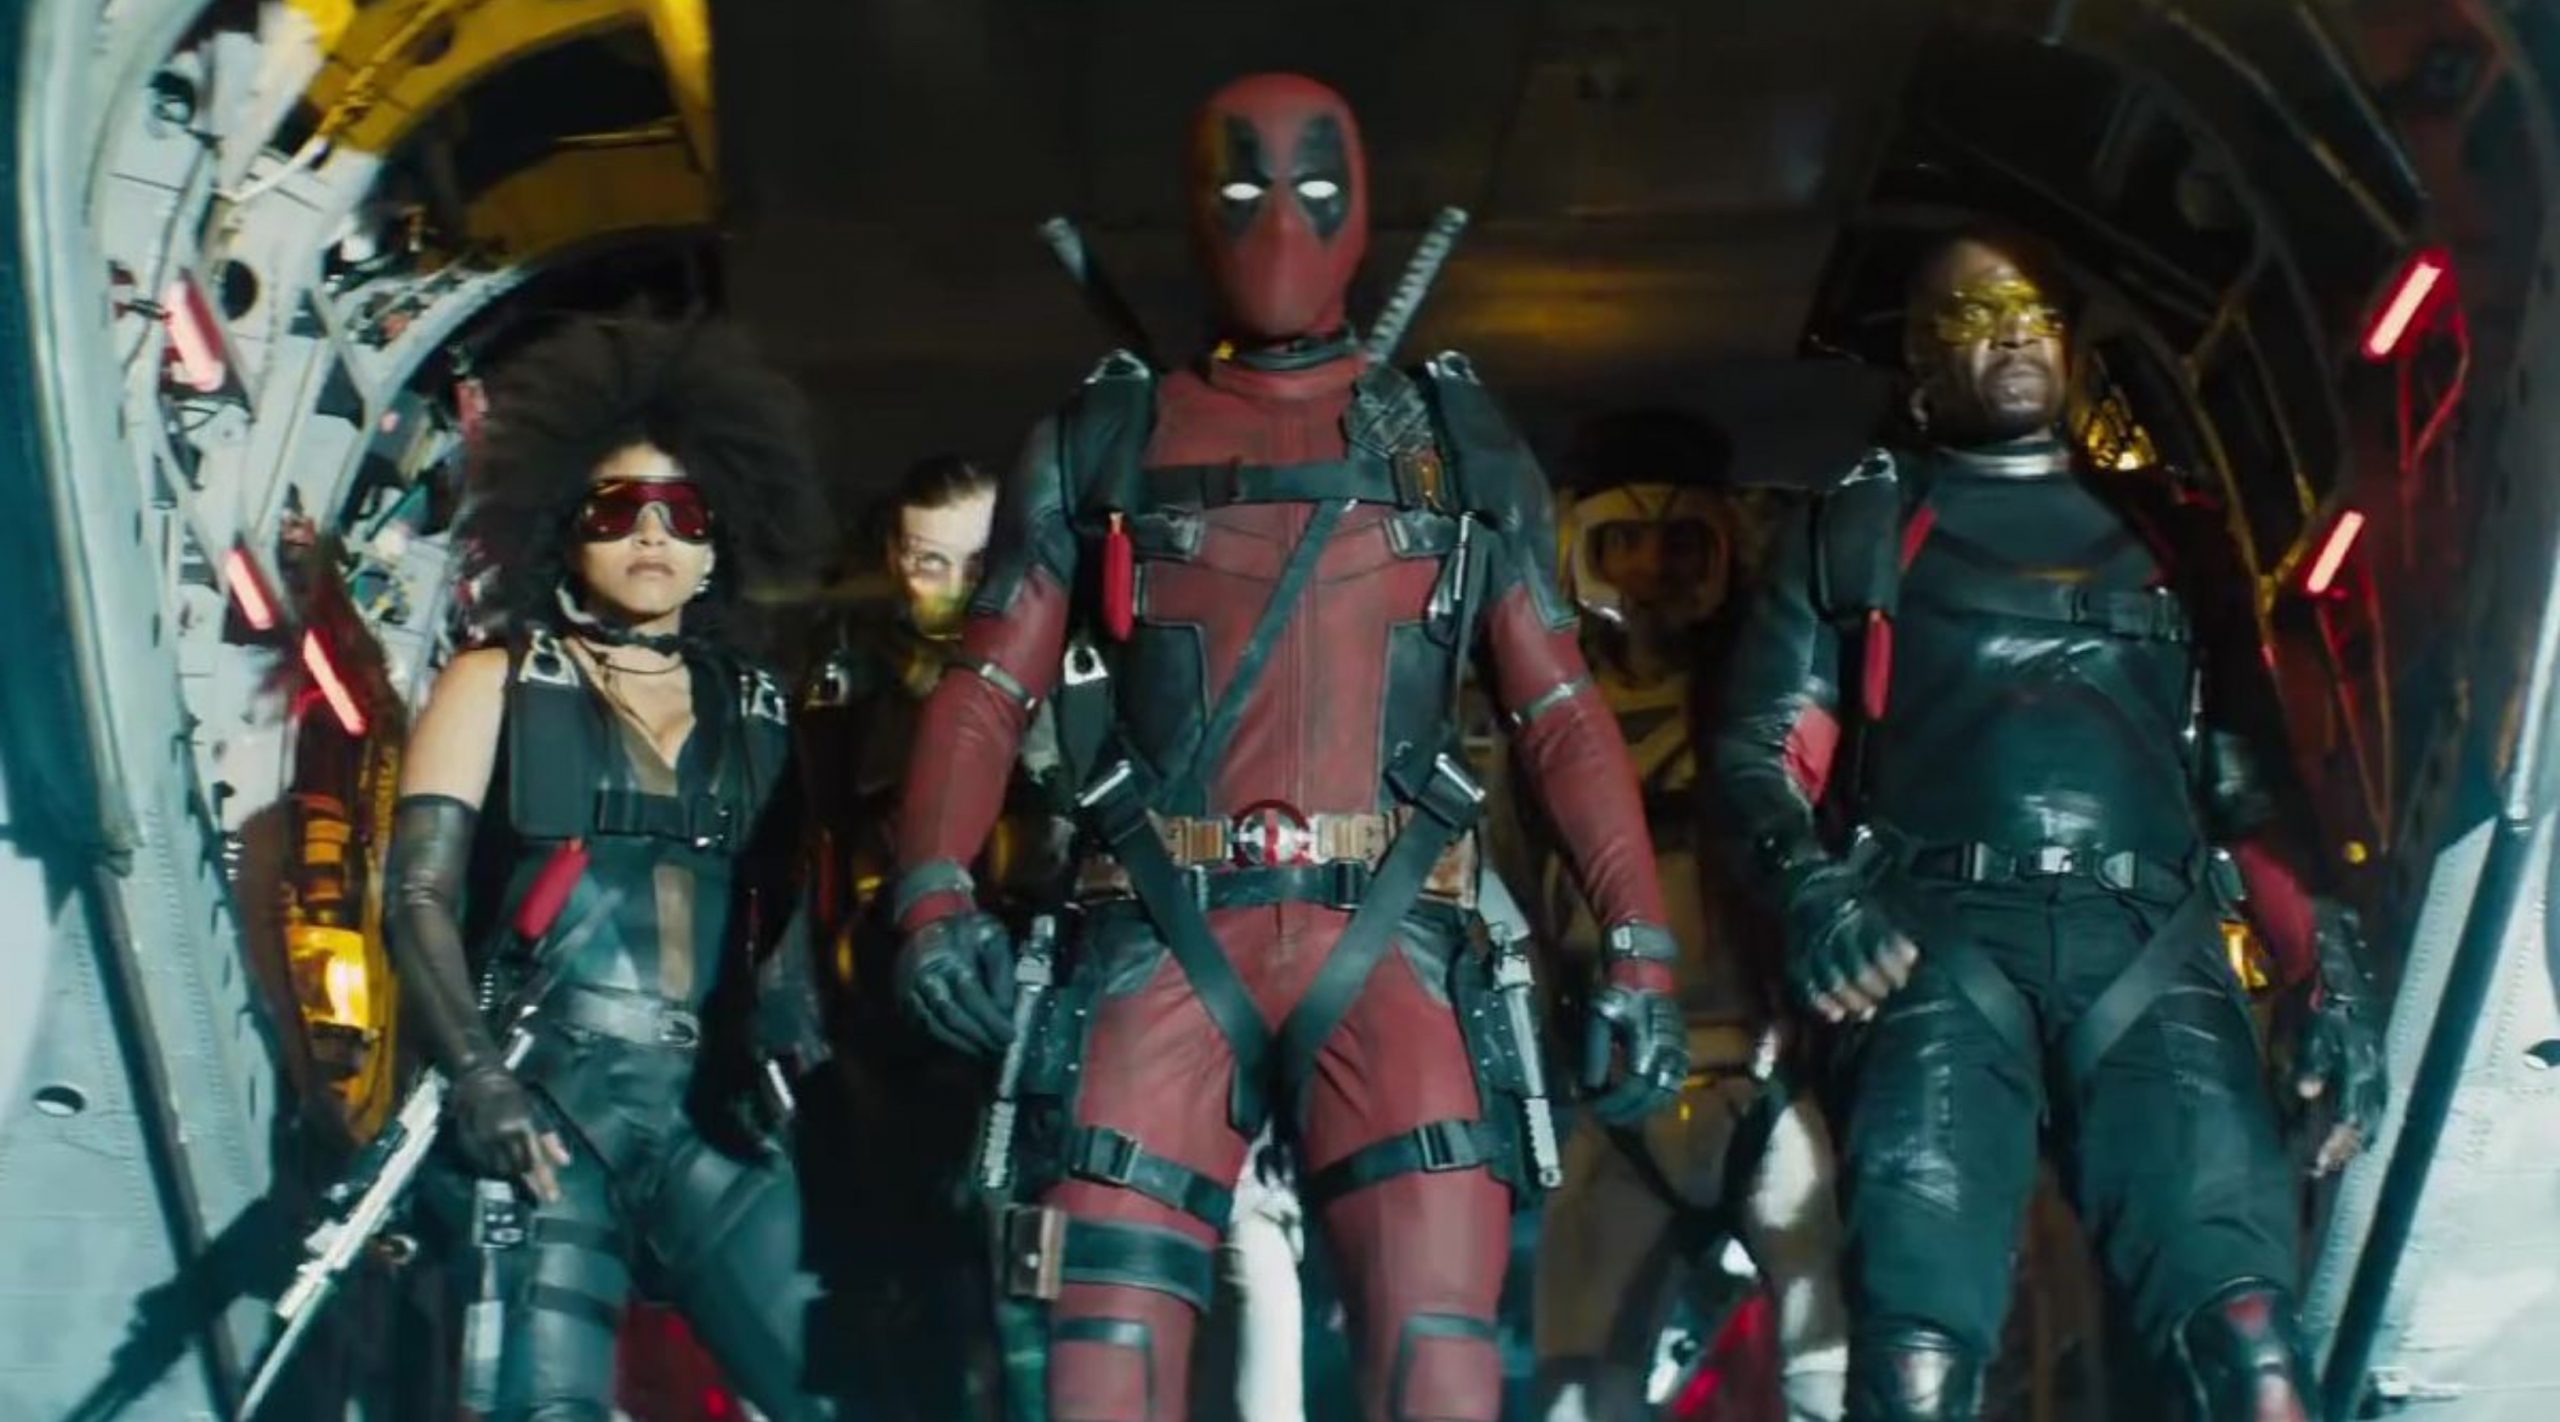 Ryan Reynolds Shares Look at Unused ‘Deadpool 2’ Costume